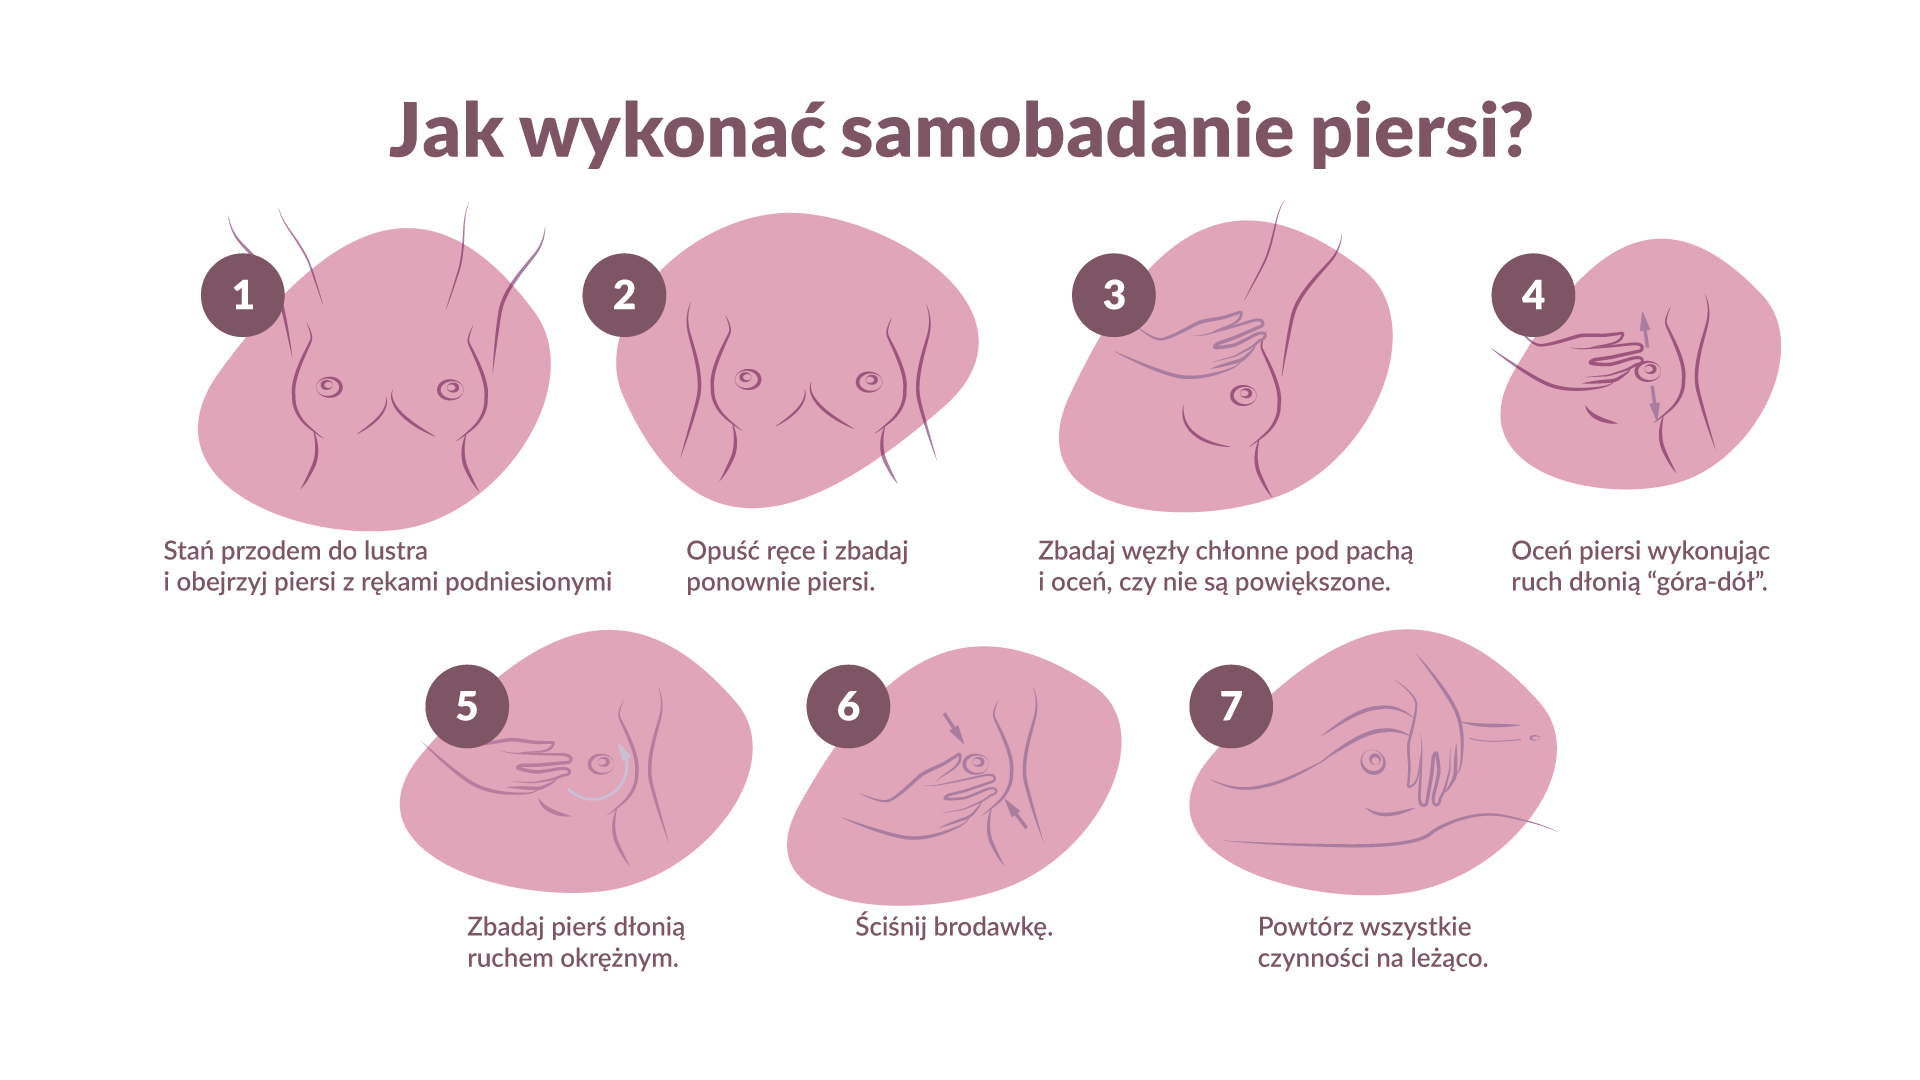 Badanie piersi - wszystko co powinnaś wiedzieć | Neno.pl